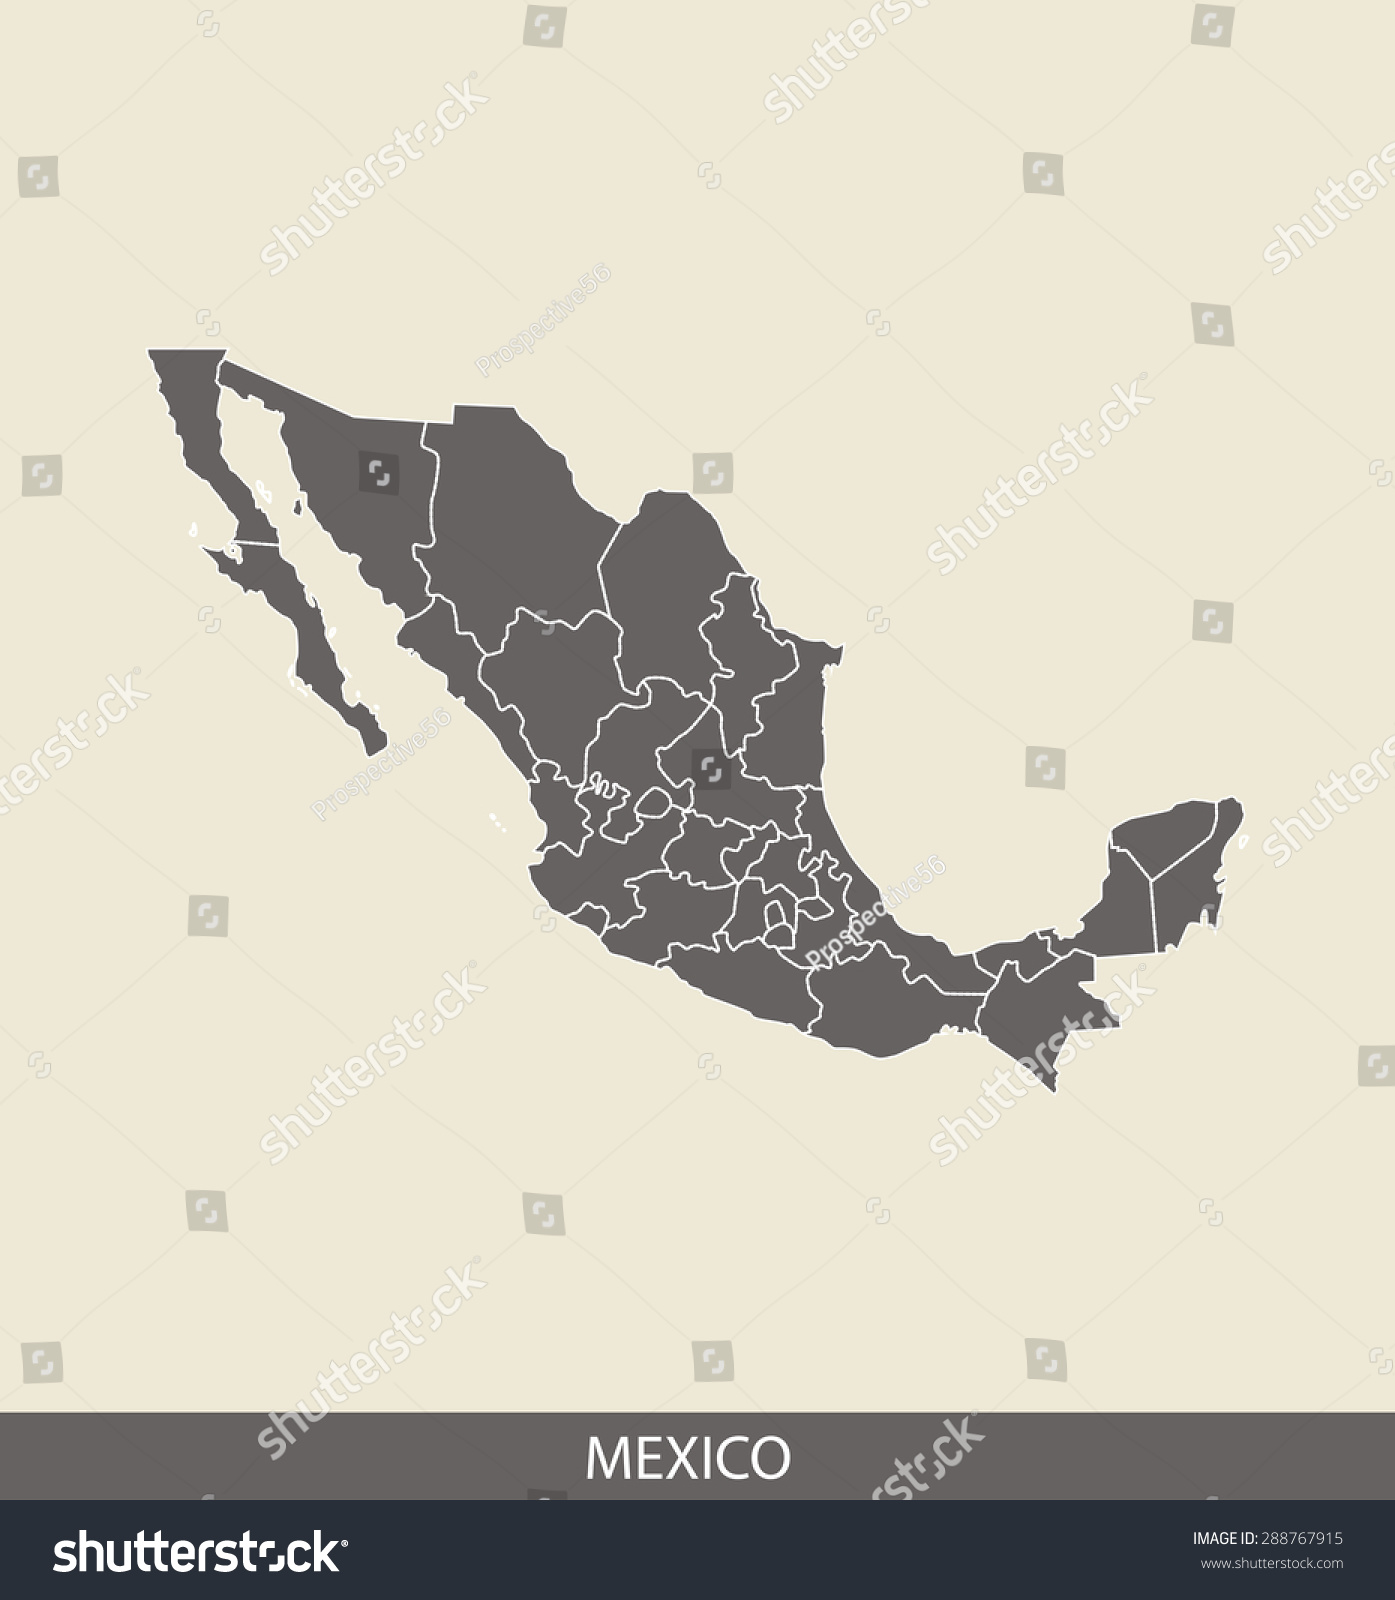 墨西哥墨西哥地图矢量地图轮廓对比灰色背景的